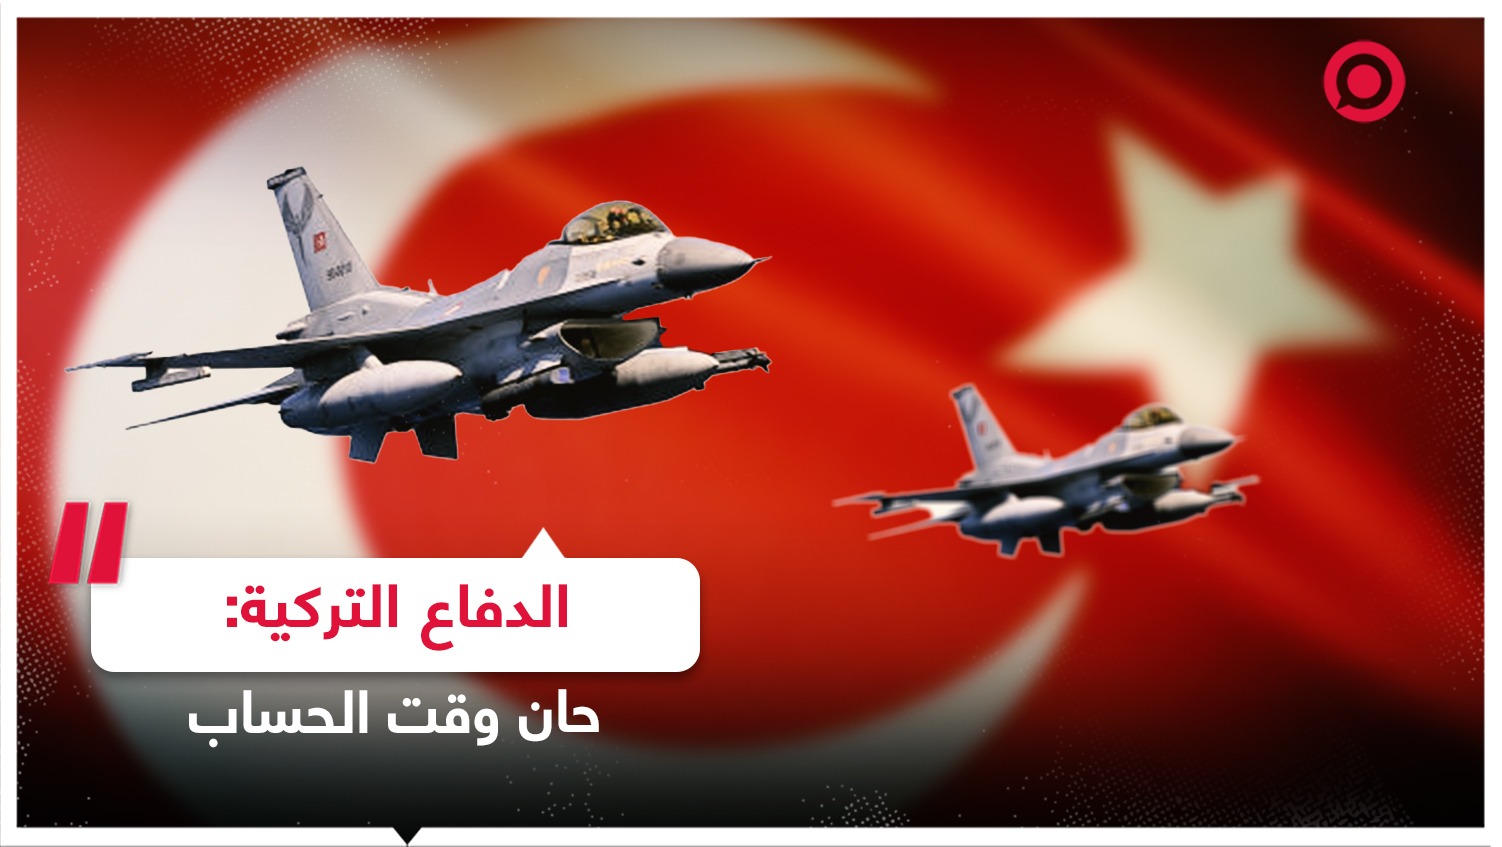 وزارة الدفاع التركية عن غاراتها في الشمال السوري: حان وقت الحساب